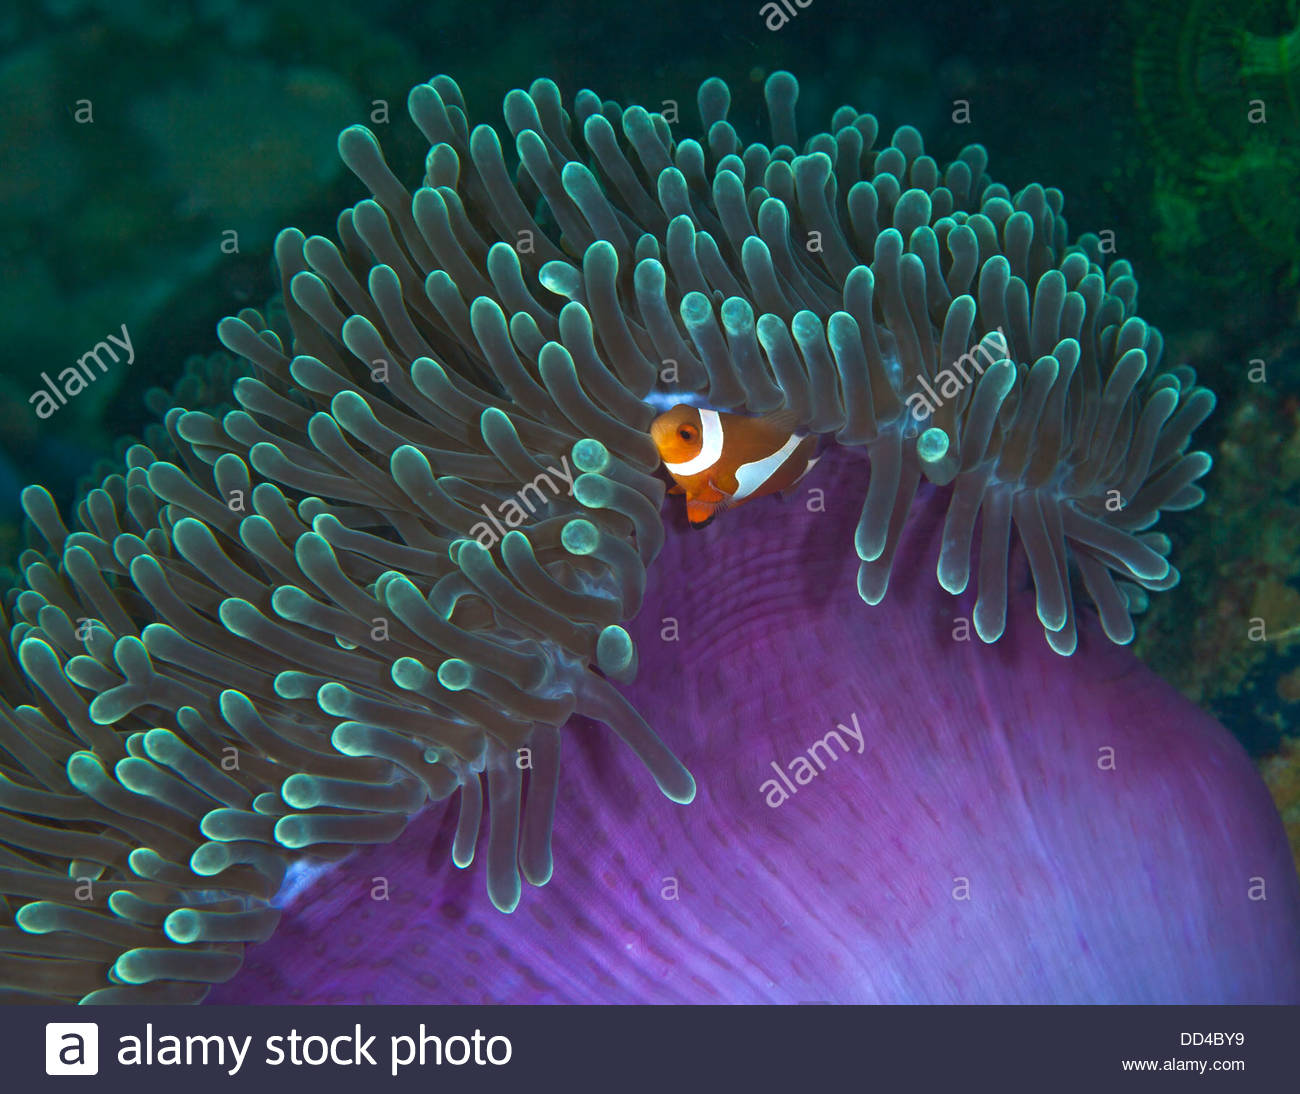 false-clownfish-nestling-in-purple-green-anemone-DD4BY9.jpg